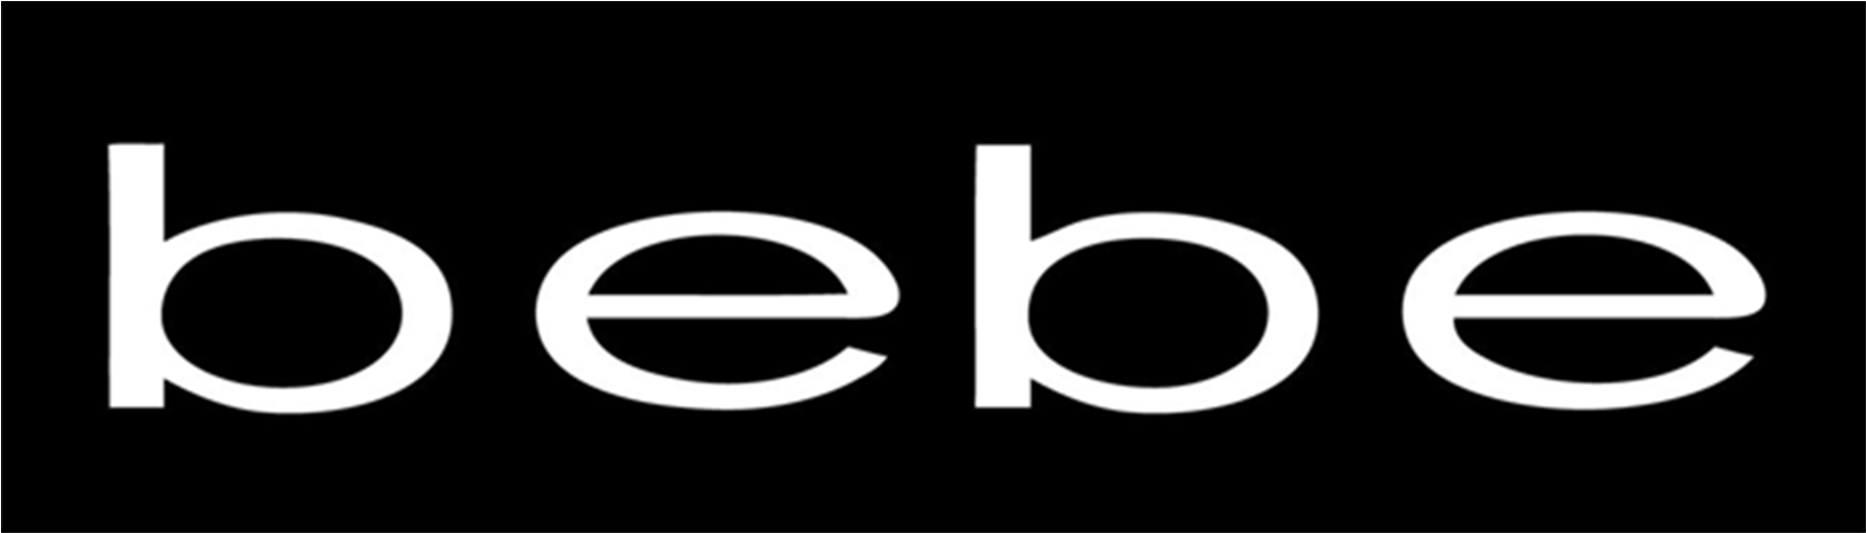 Bebe Brand Logo Black Background PNG